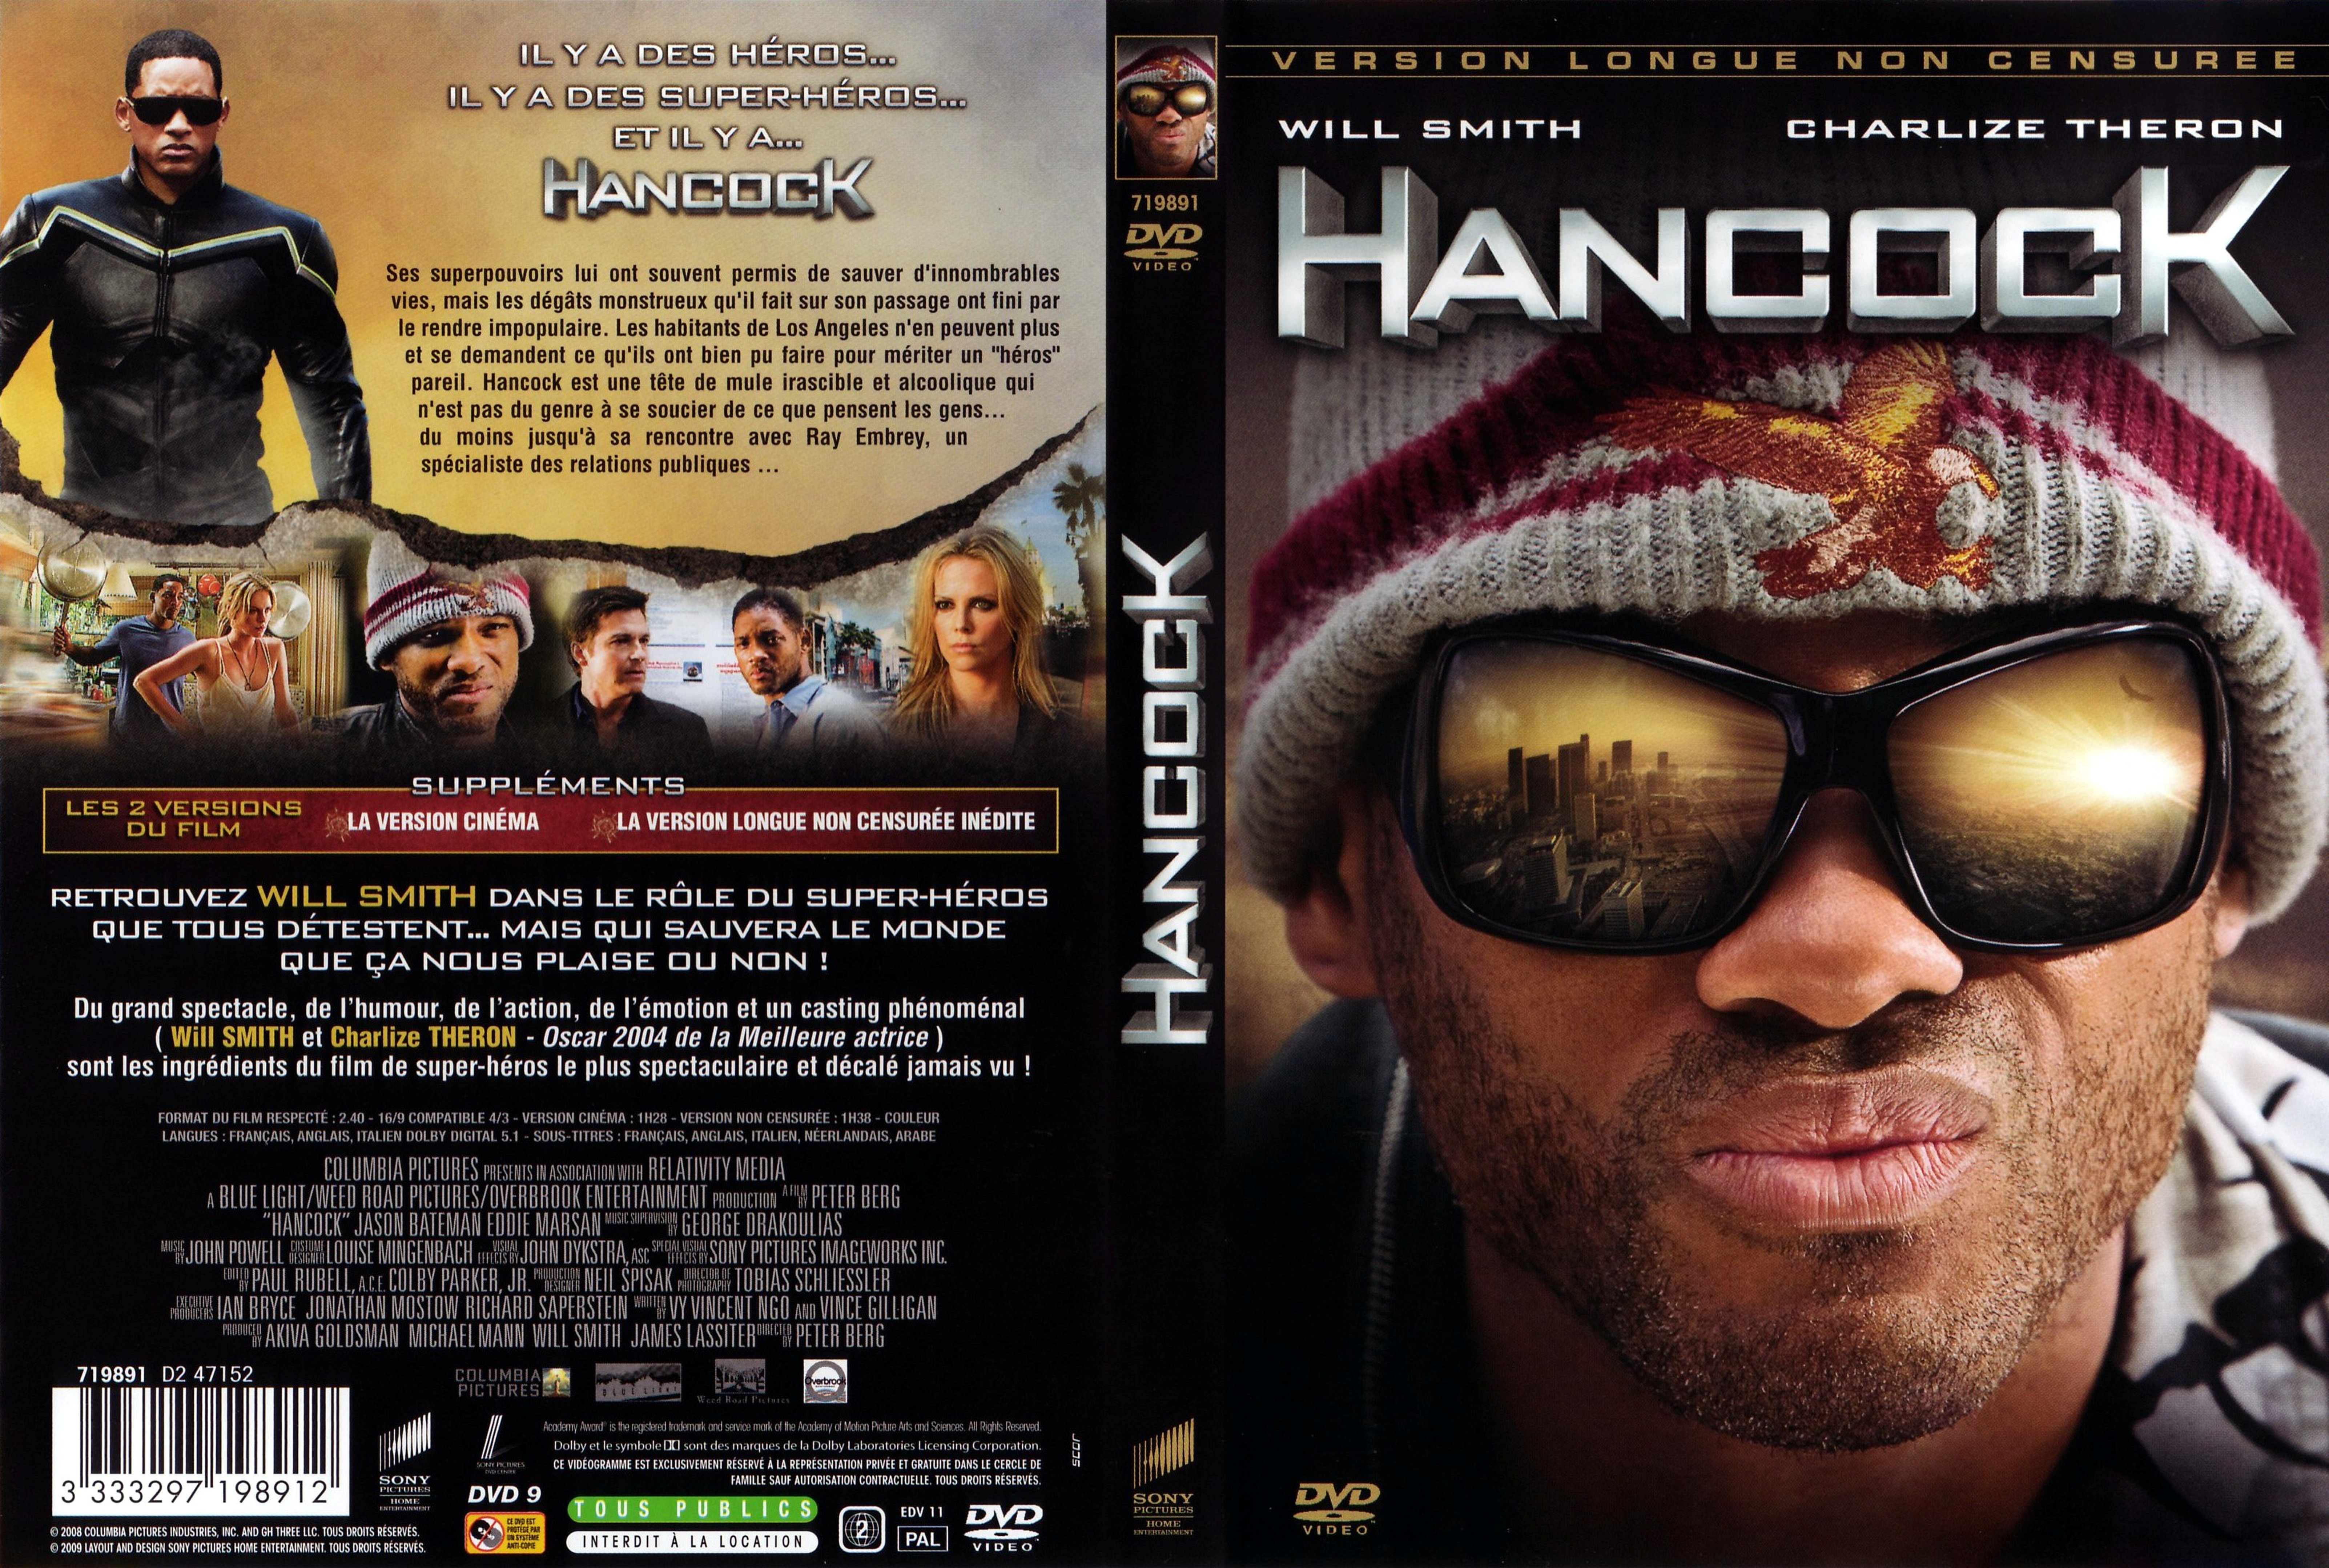 Jaquette DVD Hancock v3